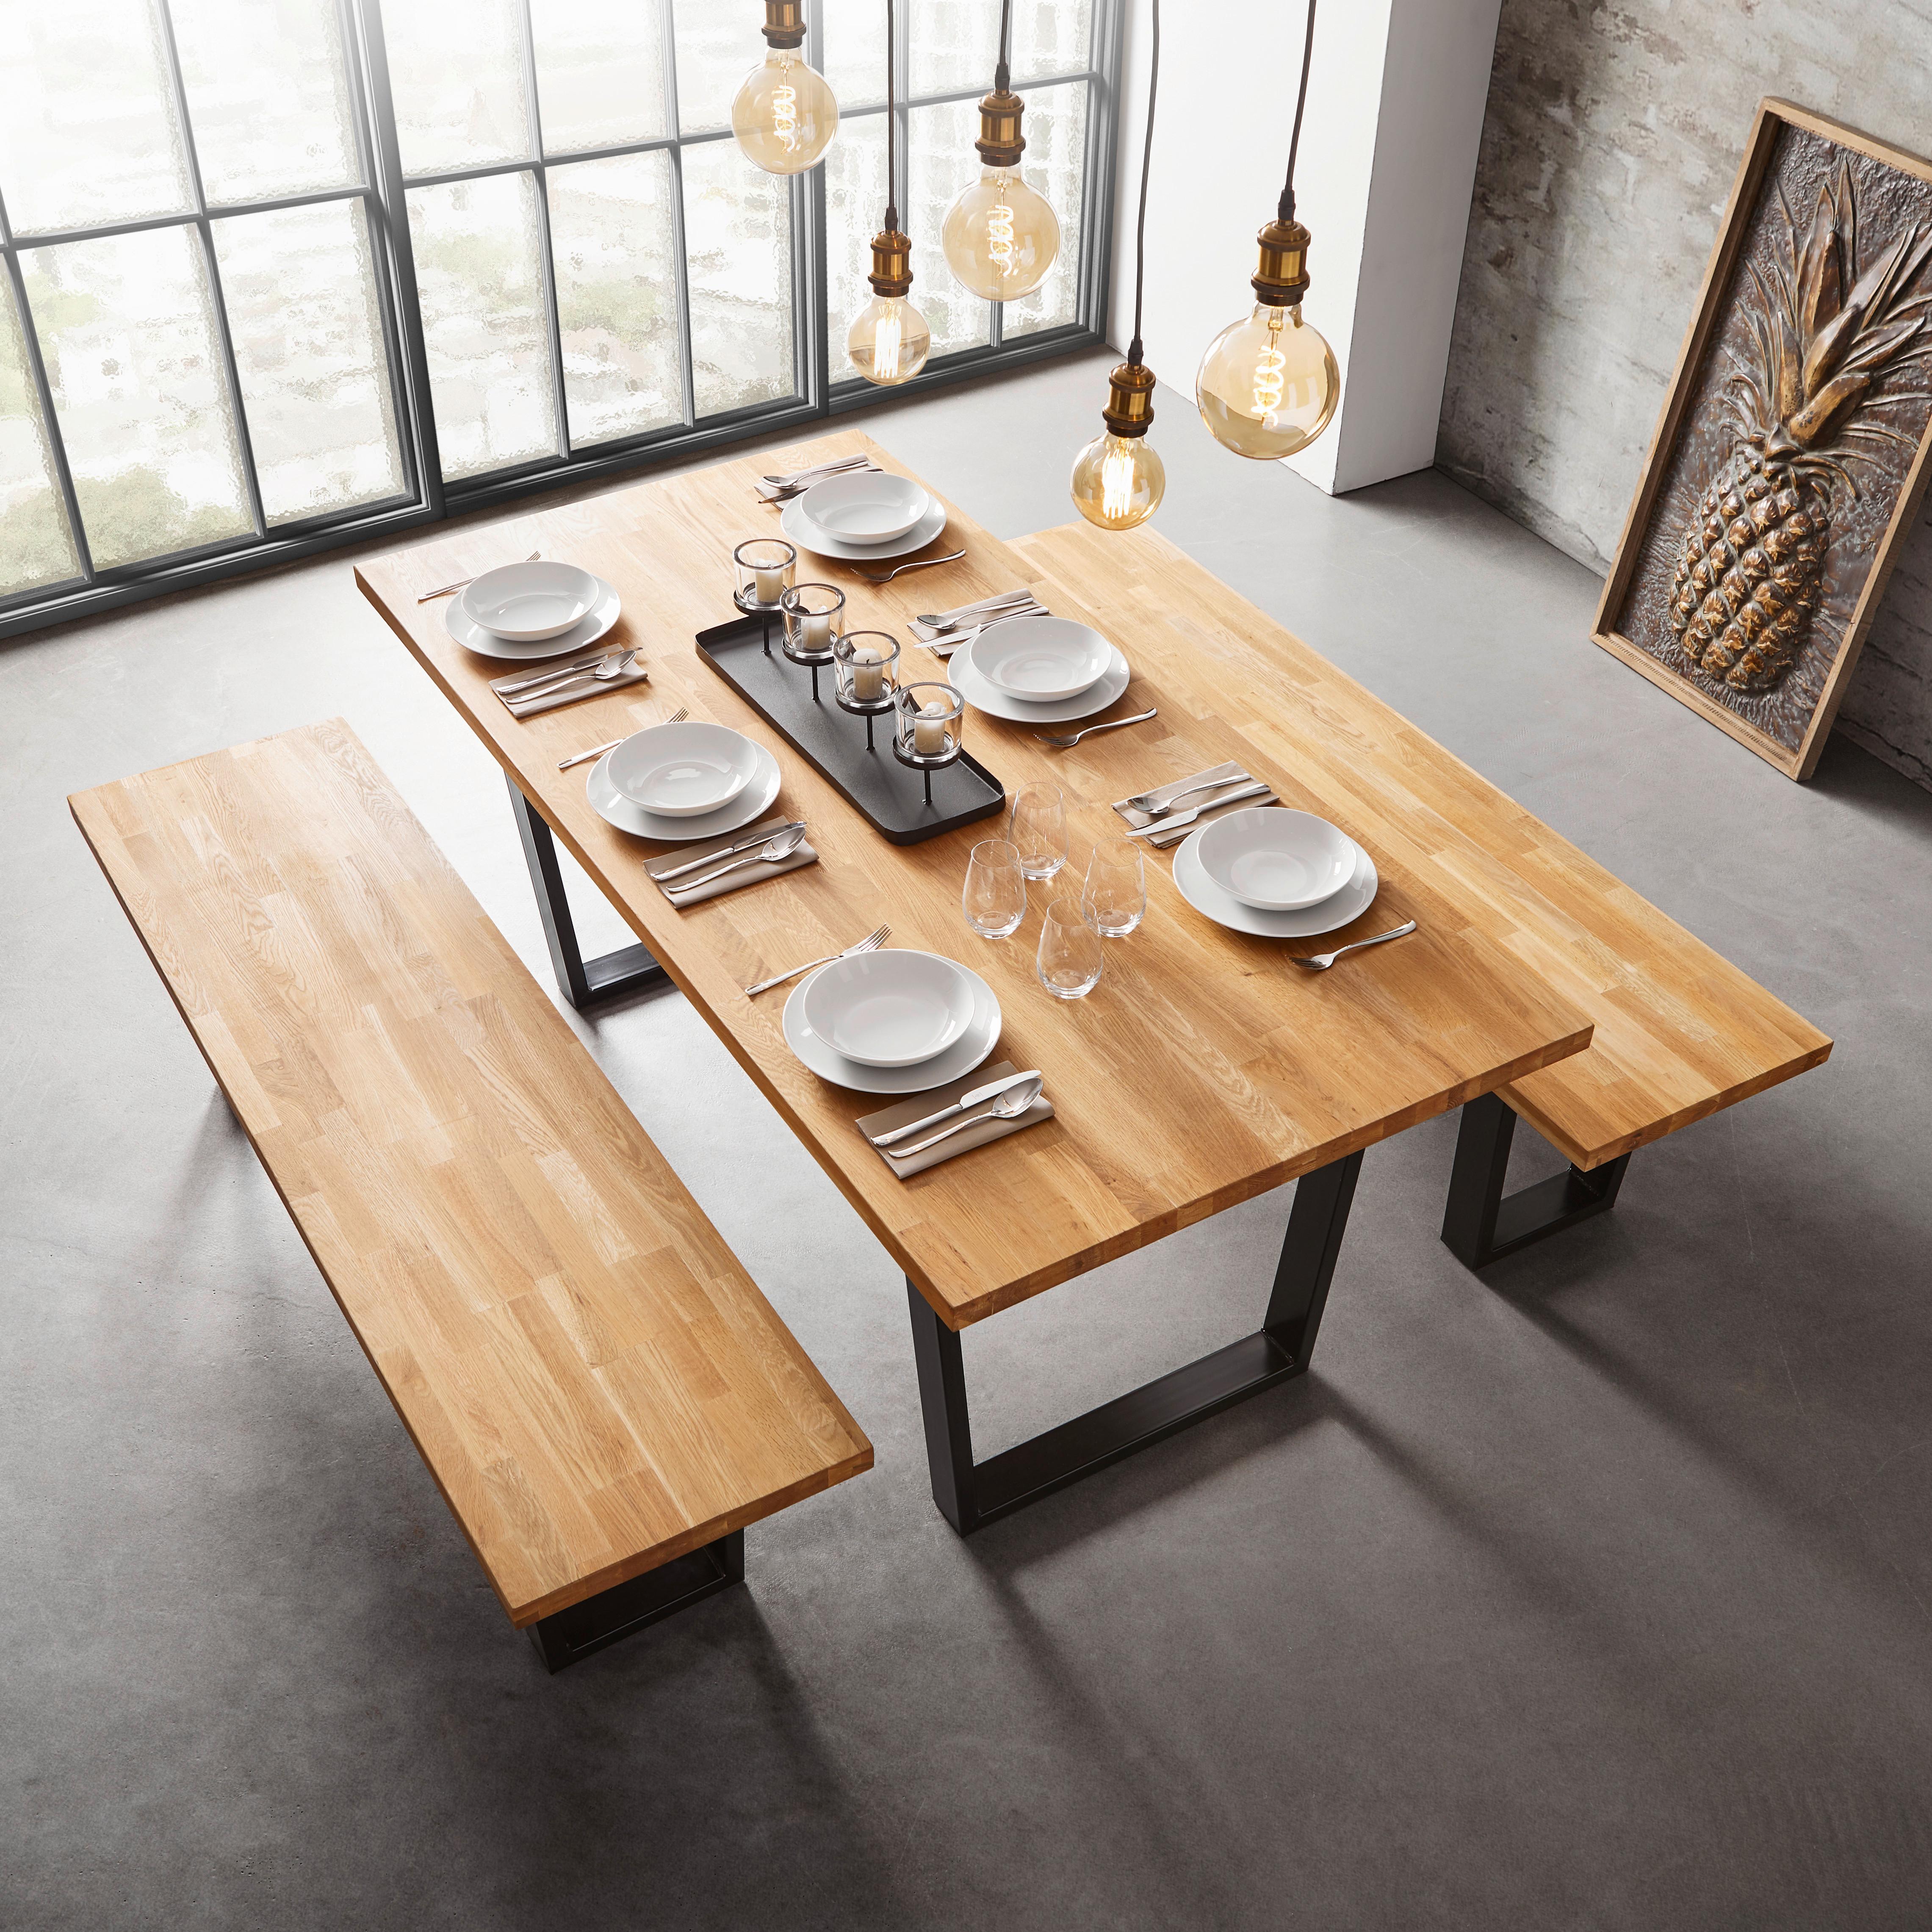 Stůl Z Masivu Kayla 180x90 Cm - černá/barvy dubu, Moderní, kov/dřevo (180/90/76cm) - Modern Living